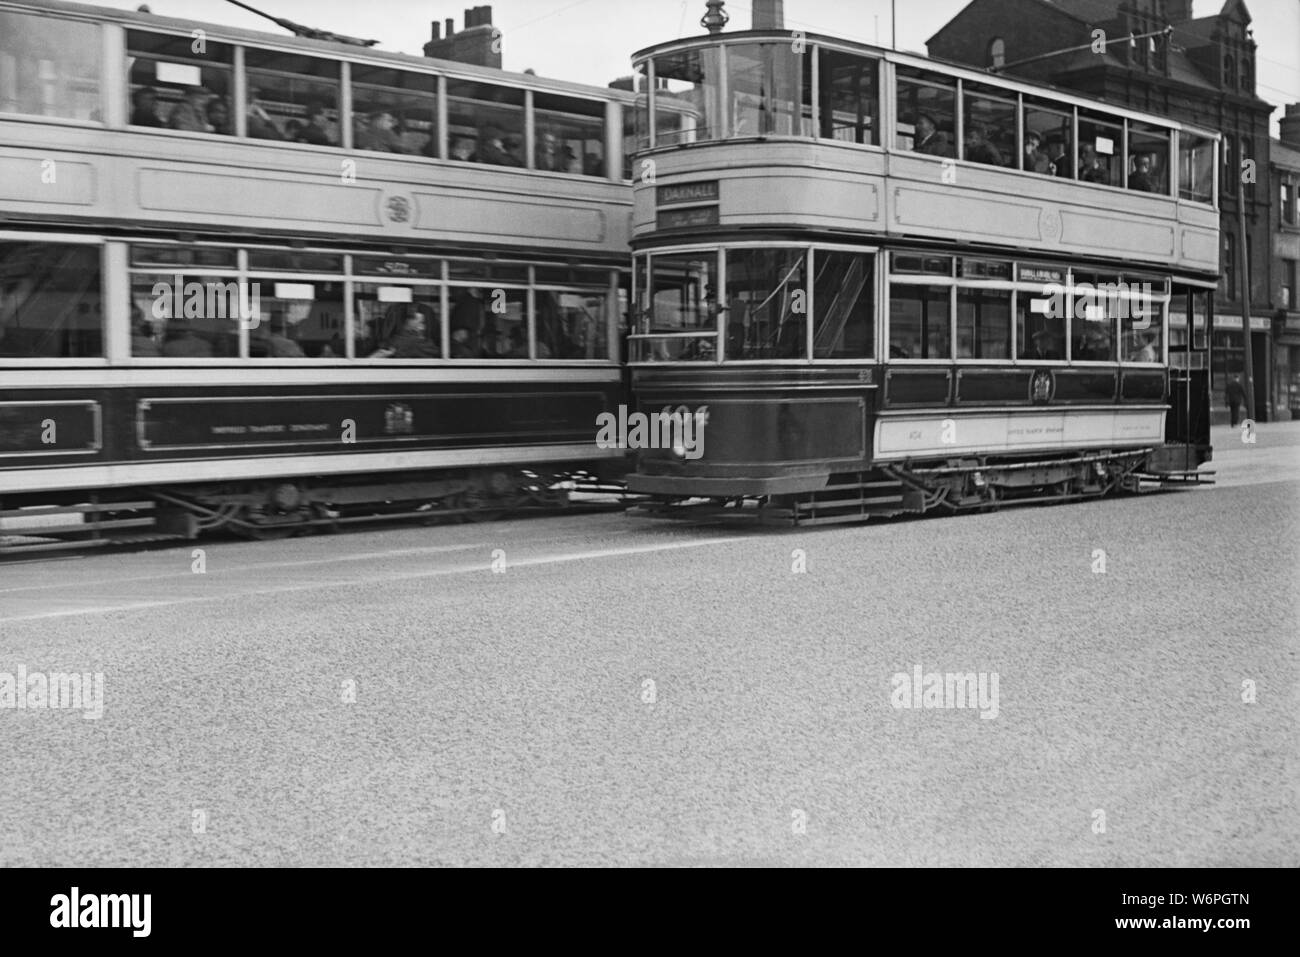 Un stile standard Sheffield tram n. 404 sulla rotta da e per il distretto di Darnall. Immagine scattata negli anni cinquanta Foto Stock